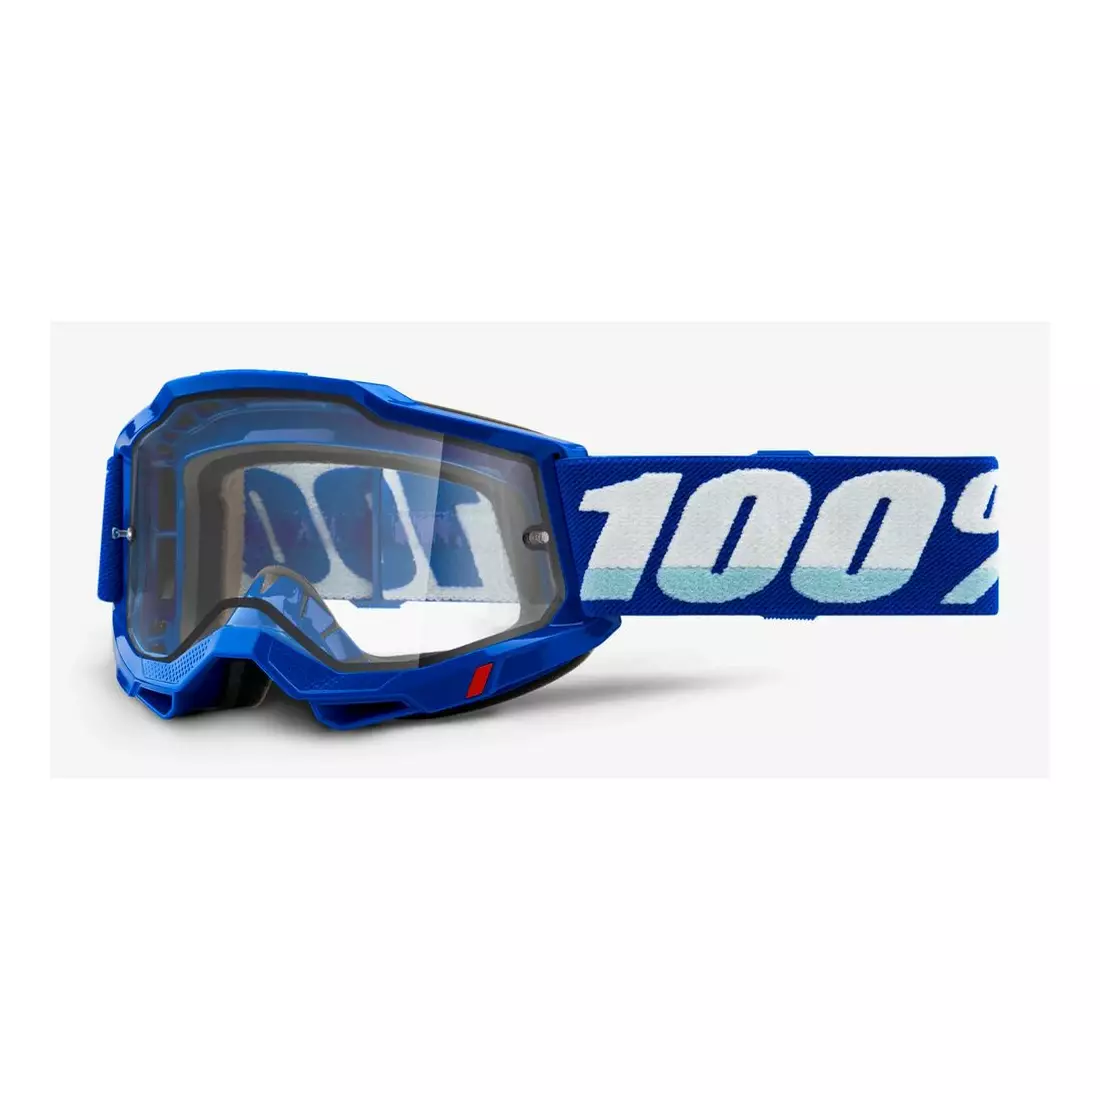 100% bicycle goggles ACCURI 2 ENDURO MOTO BLUE (transparent double pane) 1STO-50221-501-02